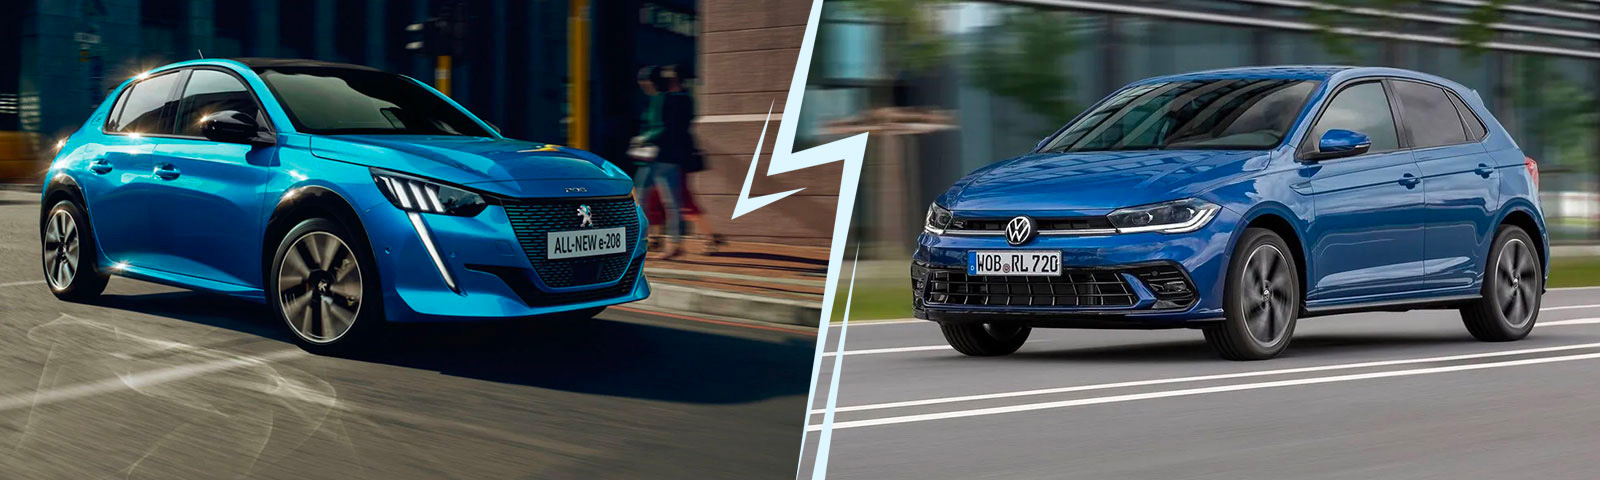 Peugeot 208 VS Volkswagen Polo : comparaison de deux citadines populaires